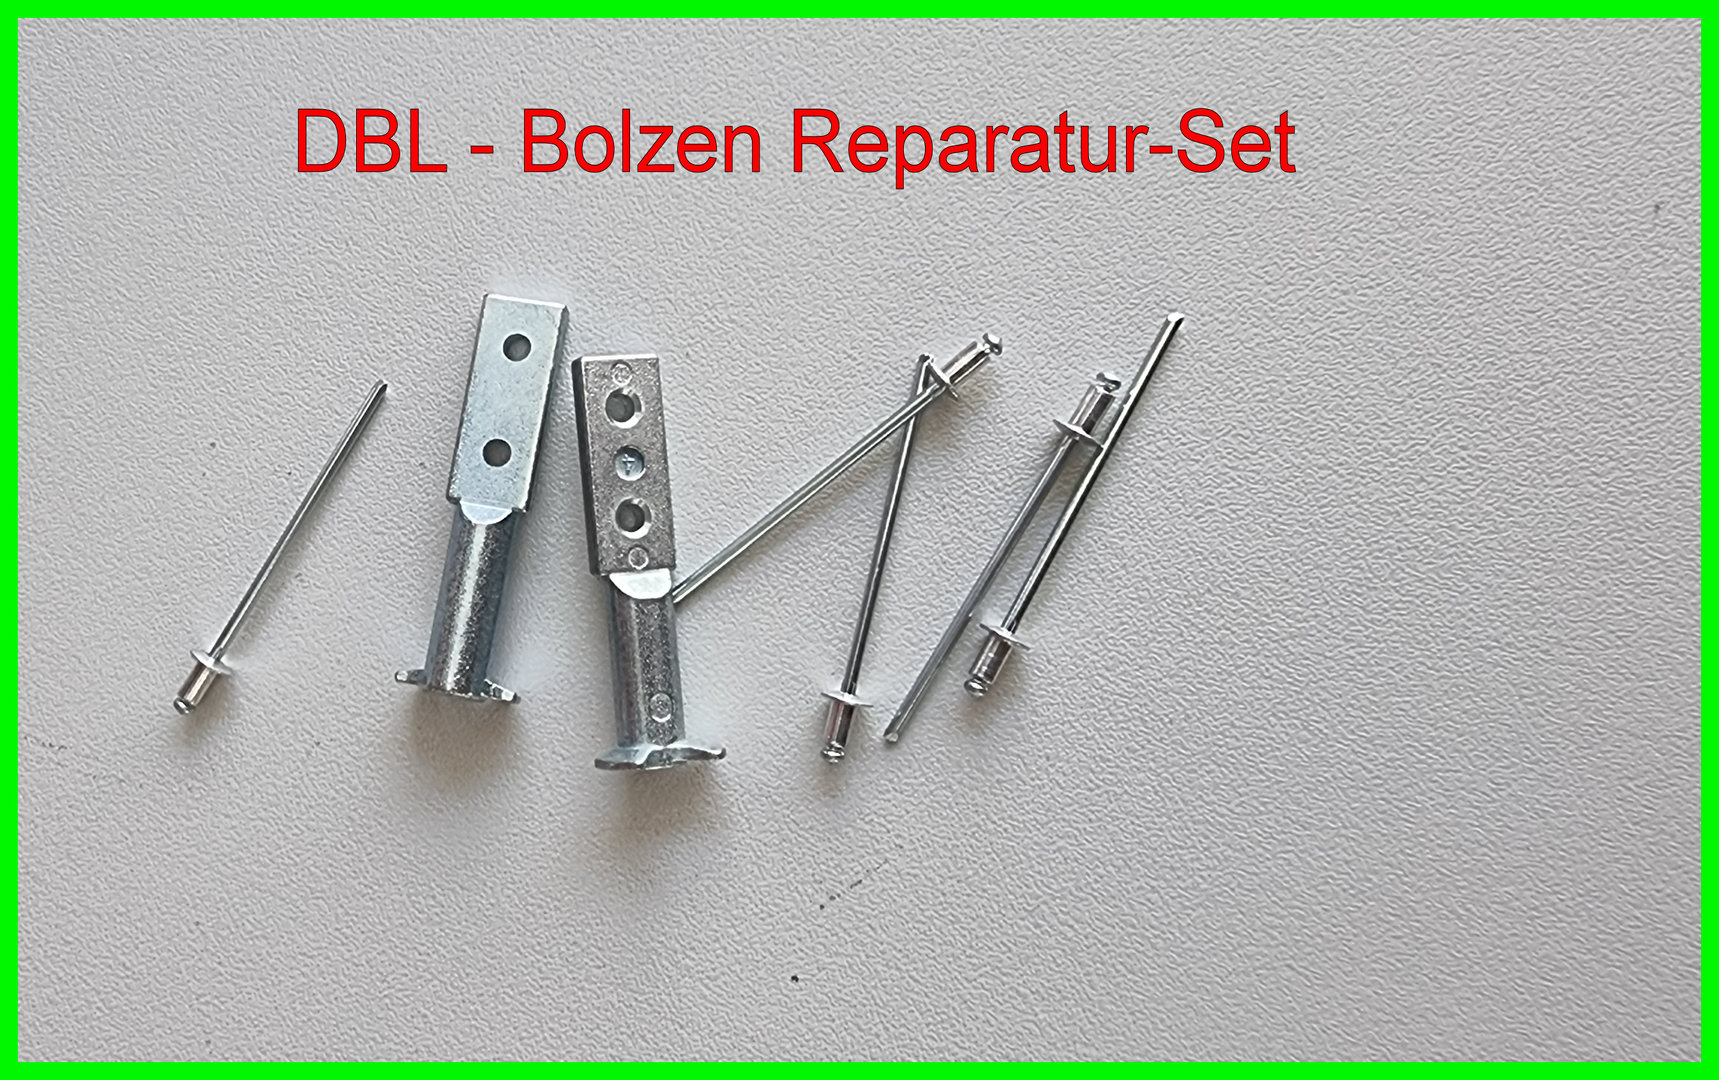 DBL-Bolzen Reparaturset